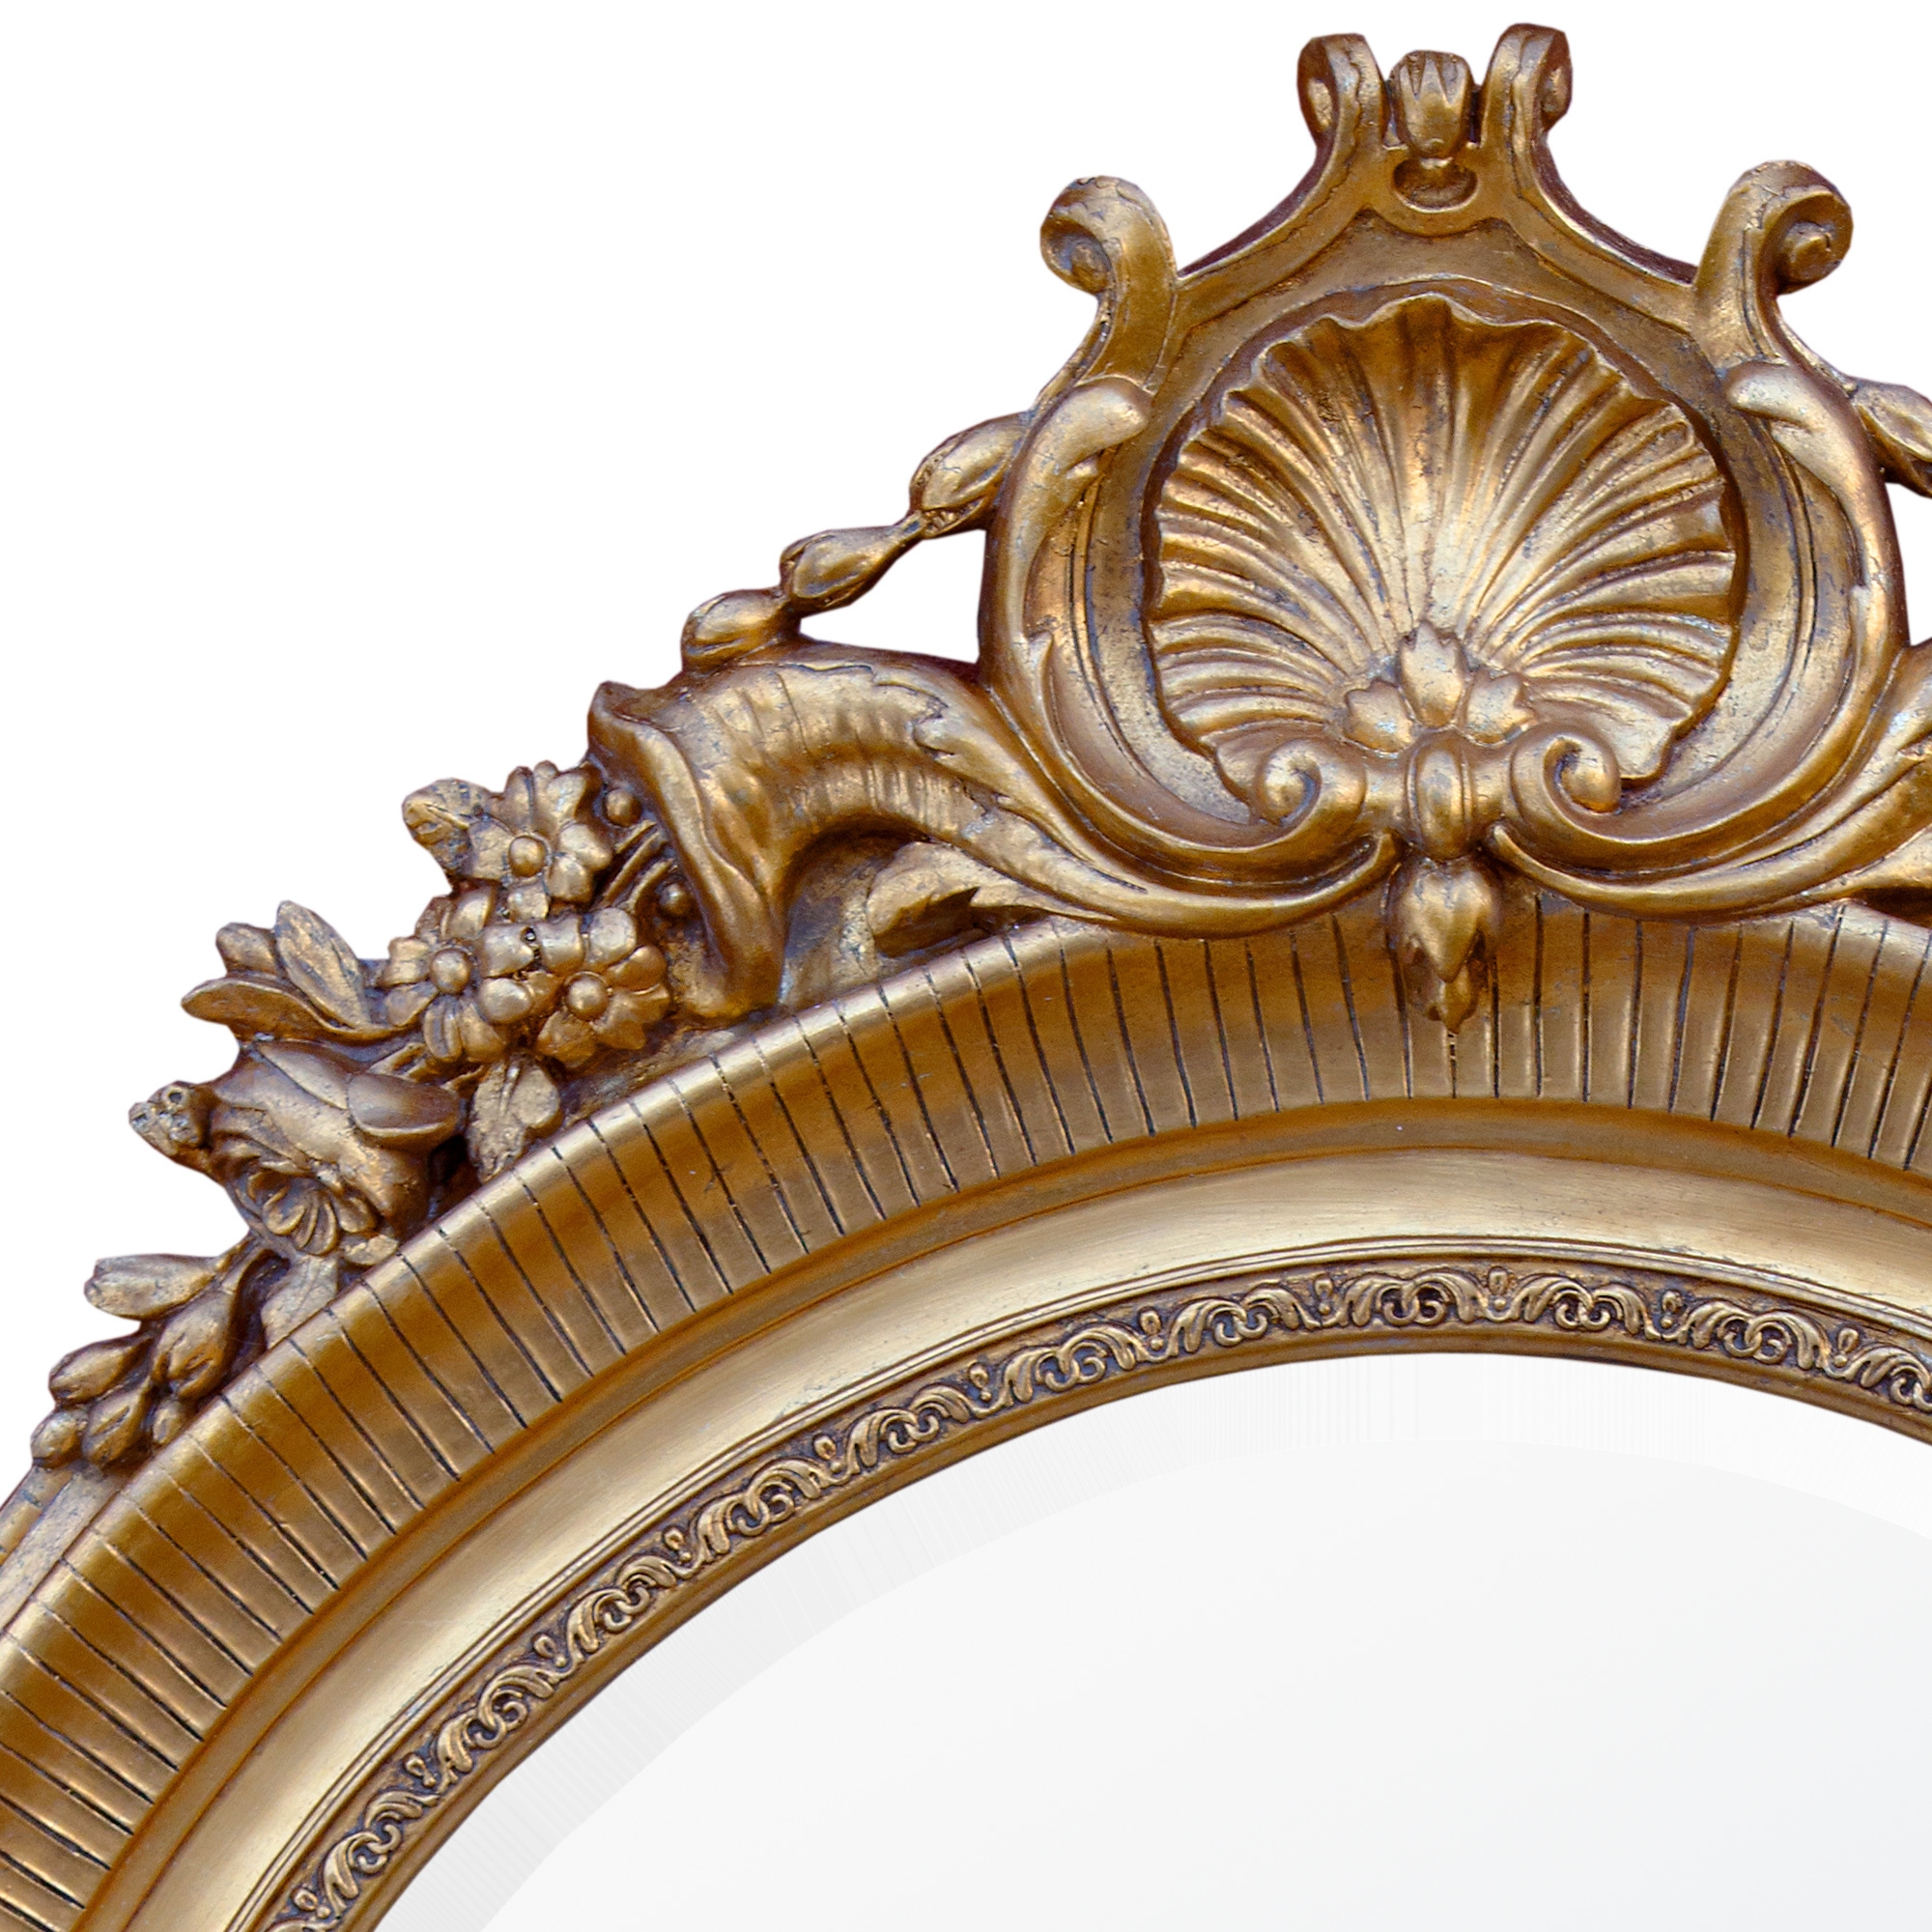 Maddalena Rococo Oval Mirror - Gold